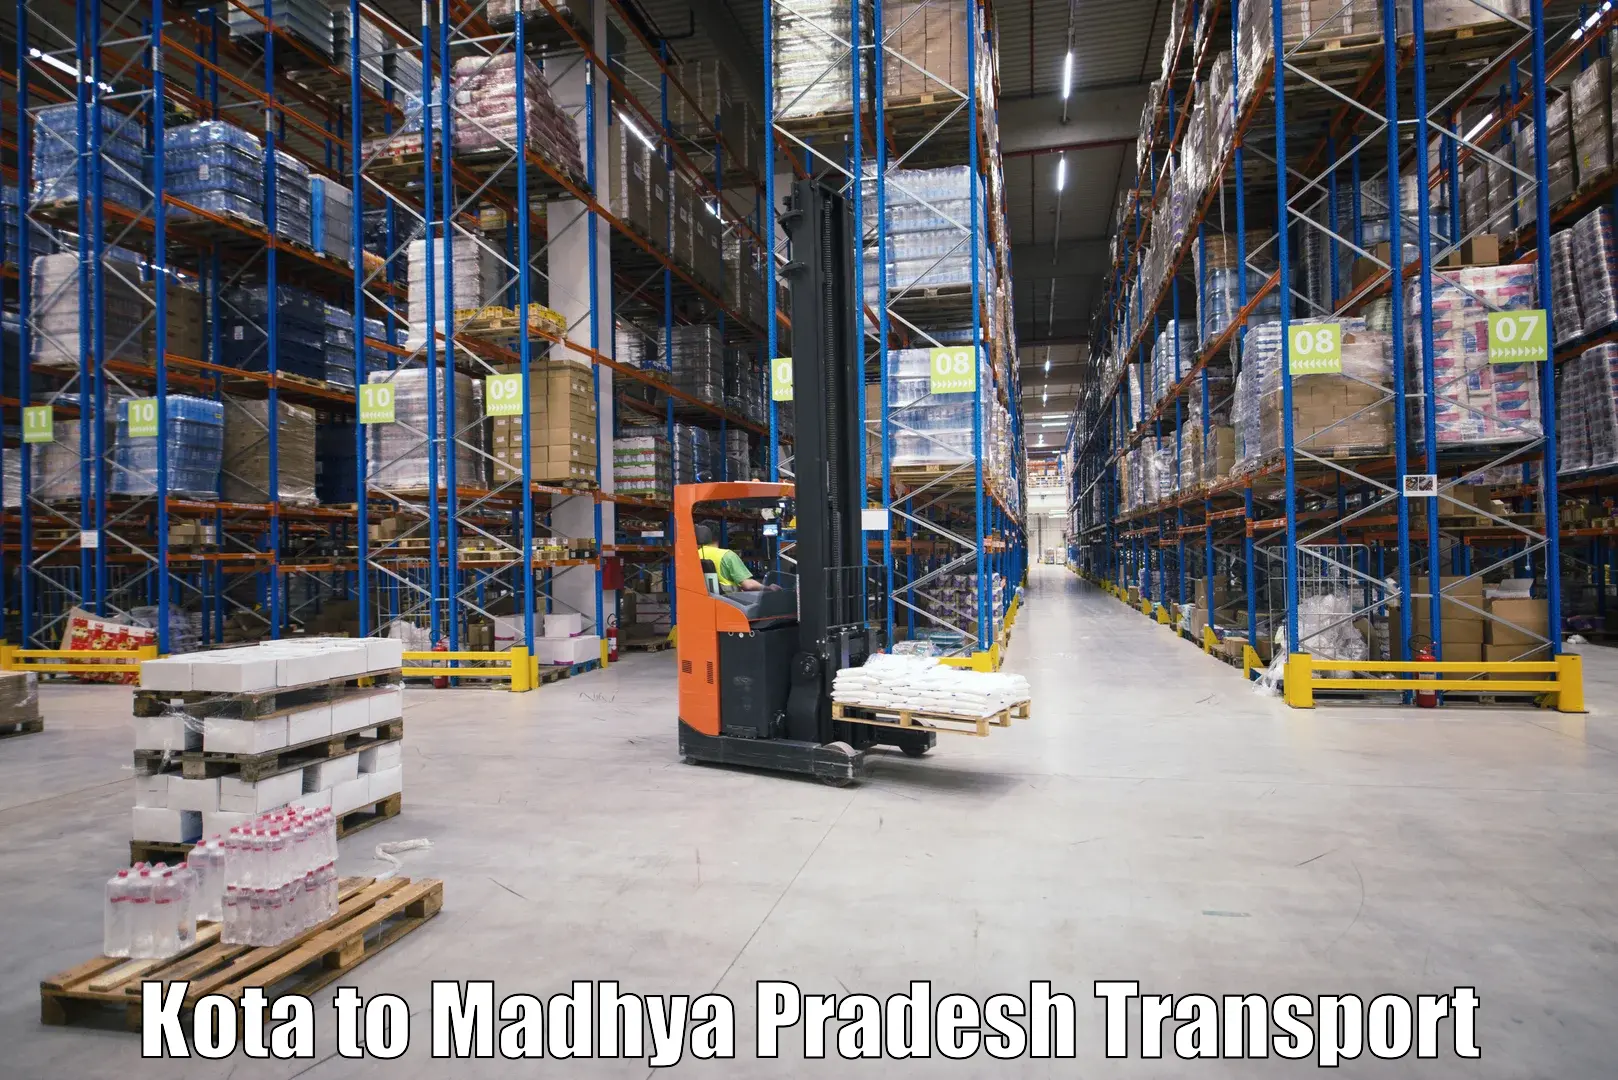 Logistics transportation services Kota to Sidhi